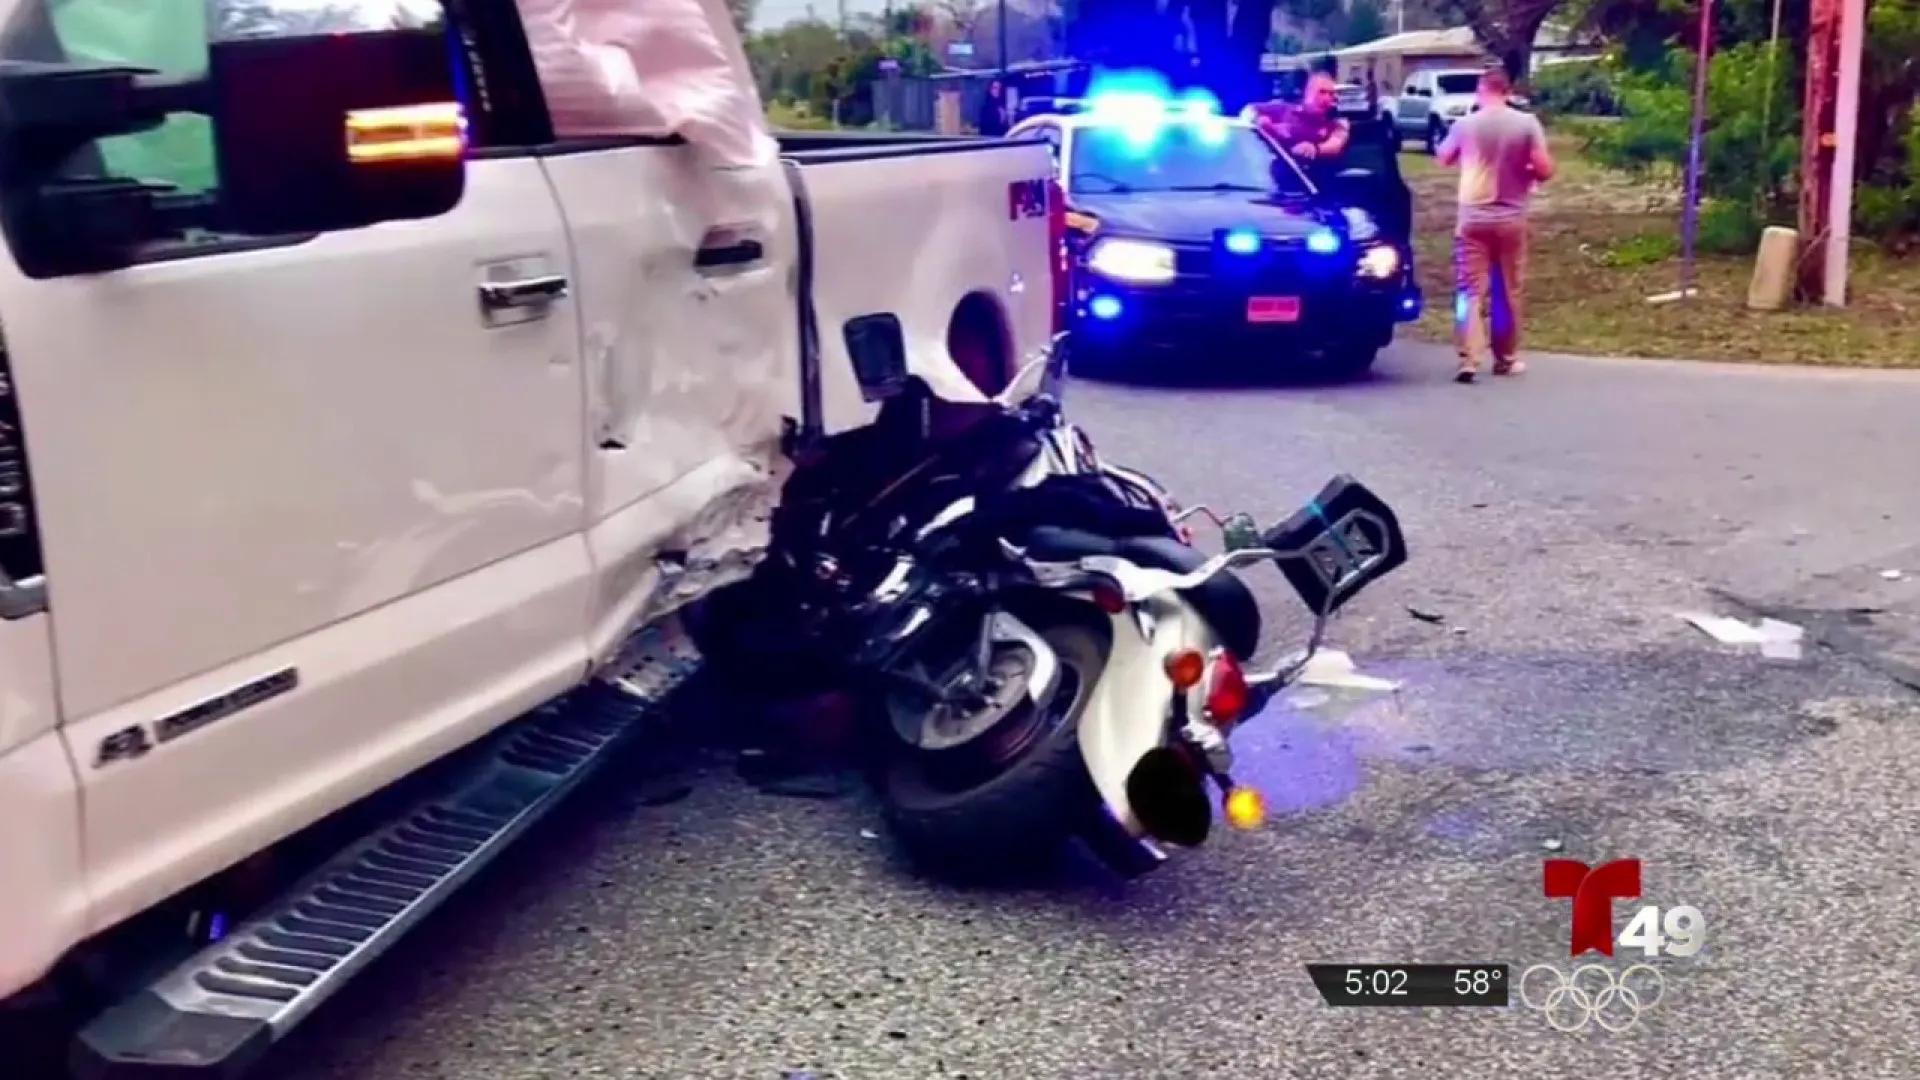 policia federal accidente comisario 44 motocicleta - Qué es el modelo policial reactivo